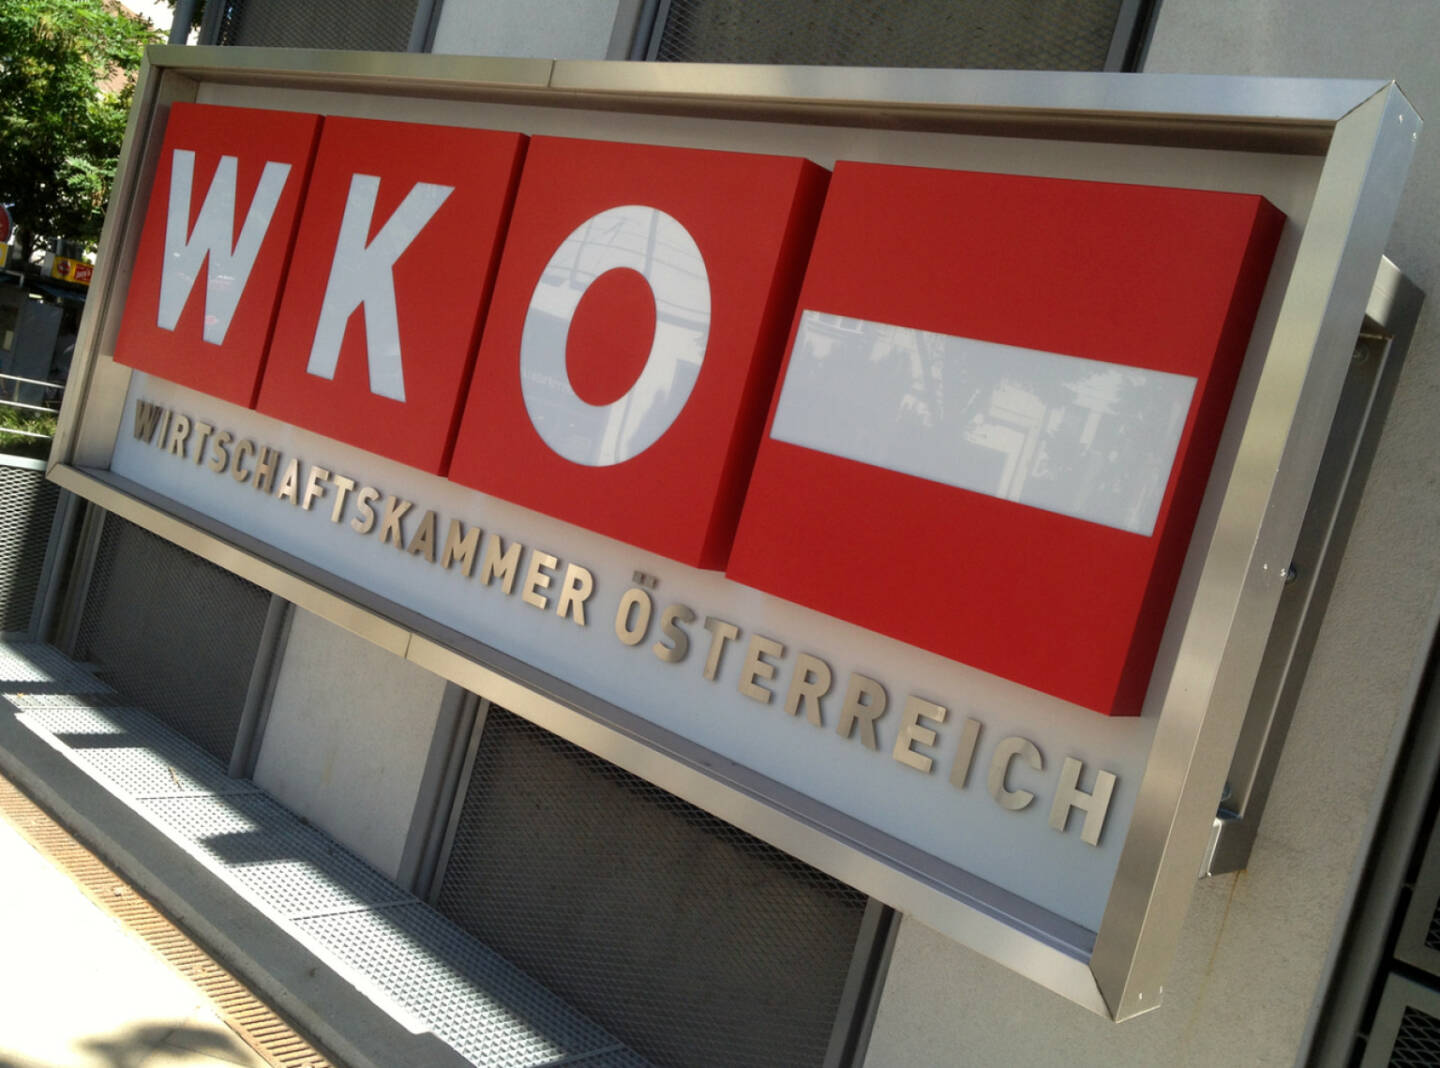 WKO, Wirtschaftskammer Österreich